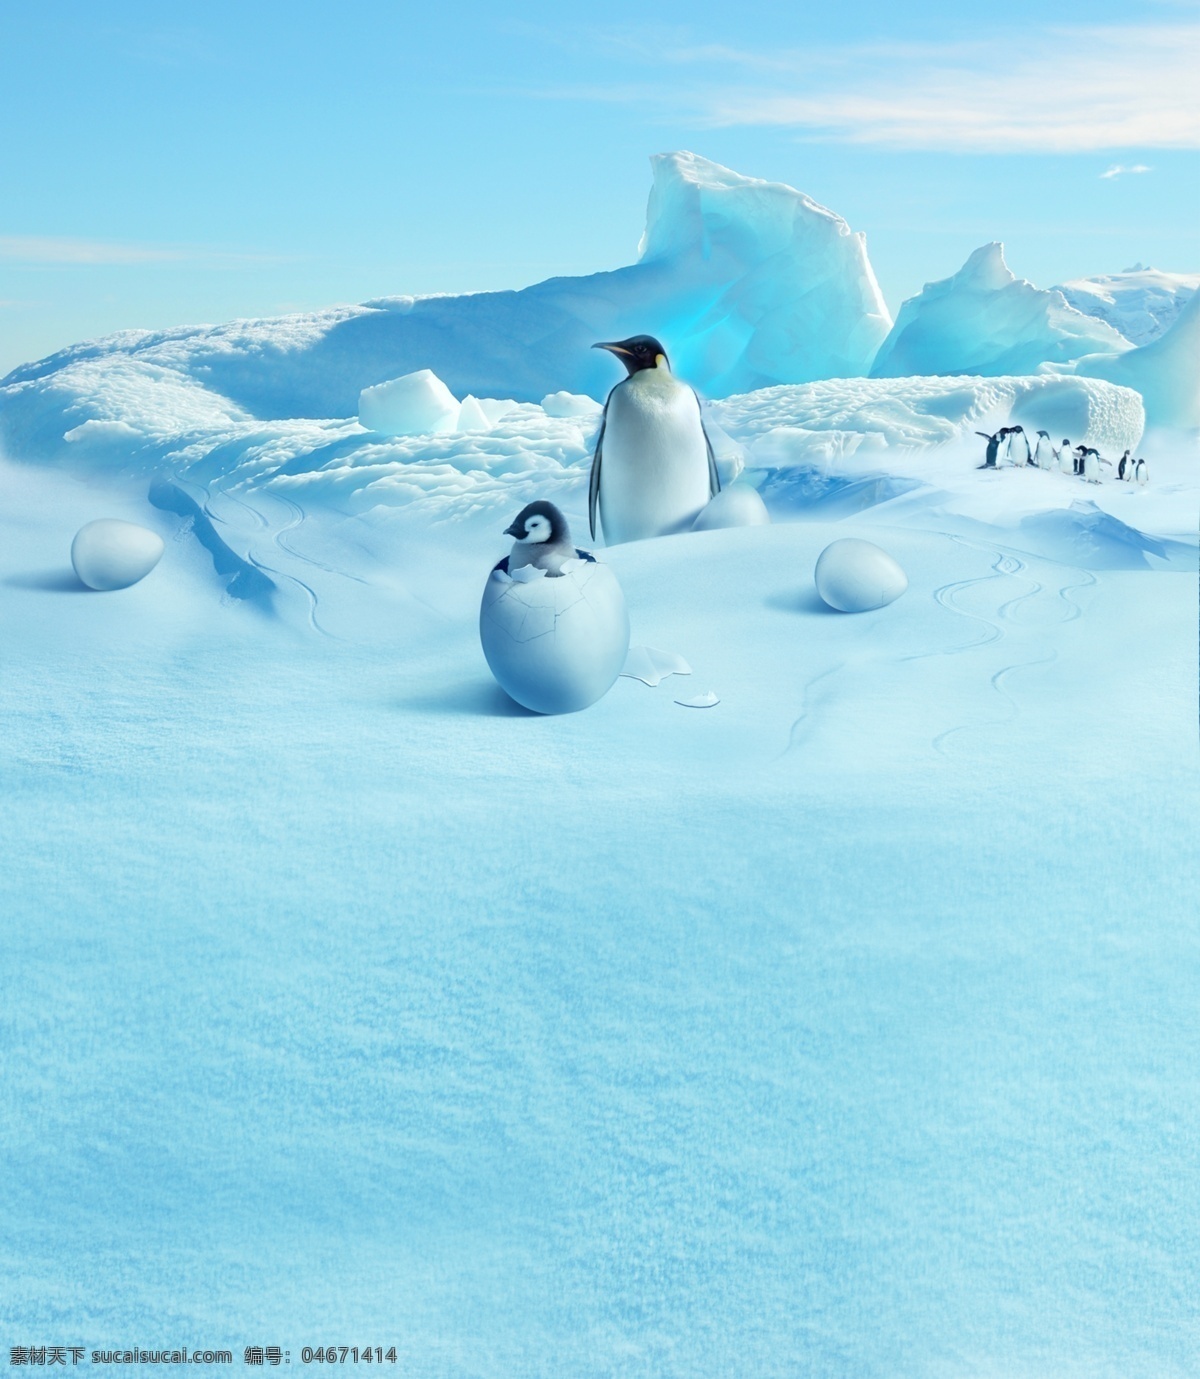 北极 冰川 蛋 企鹅 冰 雪 蓝天 鹅蛋 冰山 冰峰 雪地 极光 蓝 冰天雪地 北极圈 分层 风景